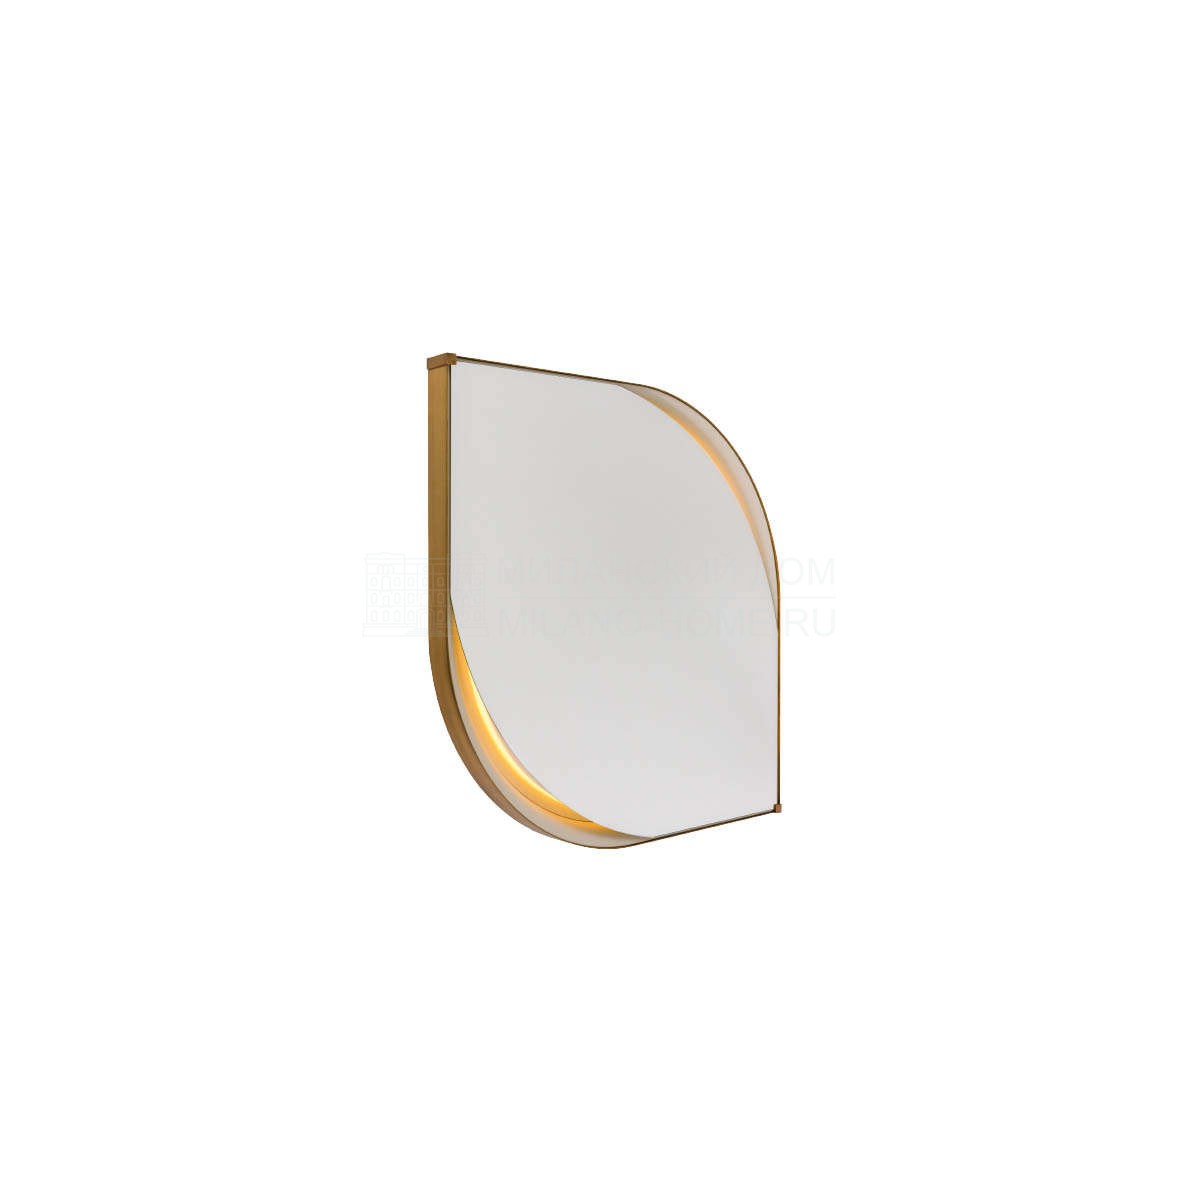 Зеркало настенное Vine teardrop mirror из Италии фабрики TURRI